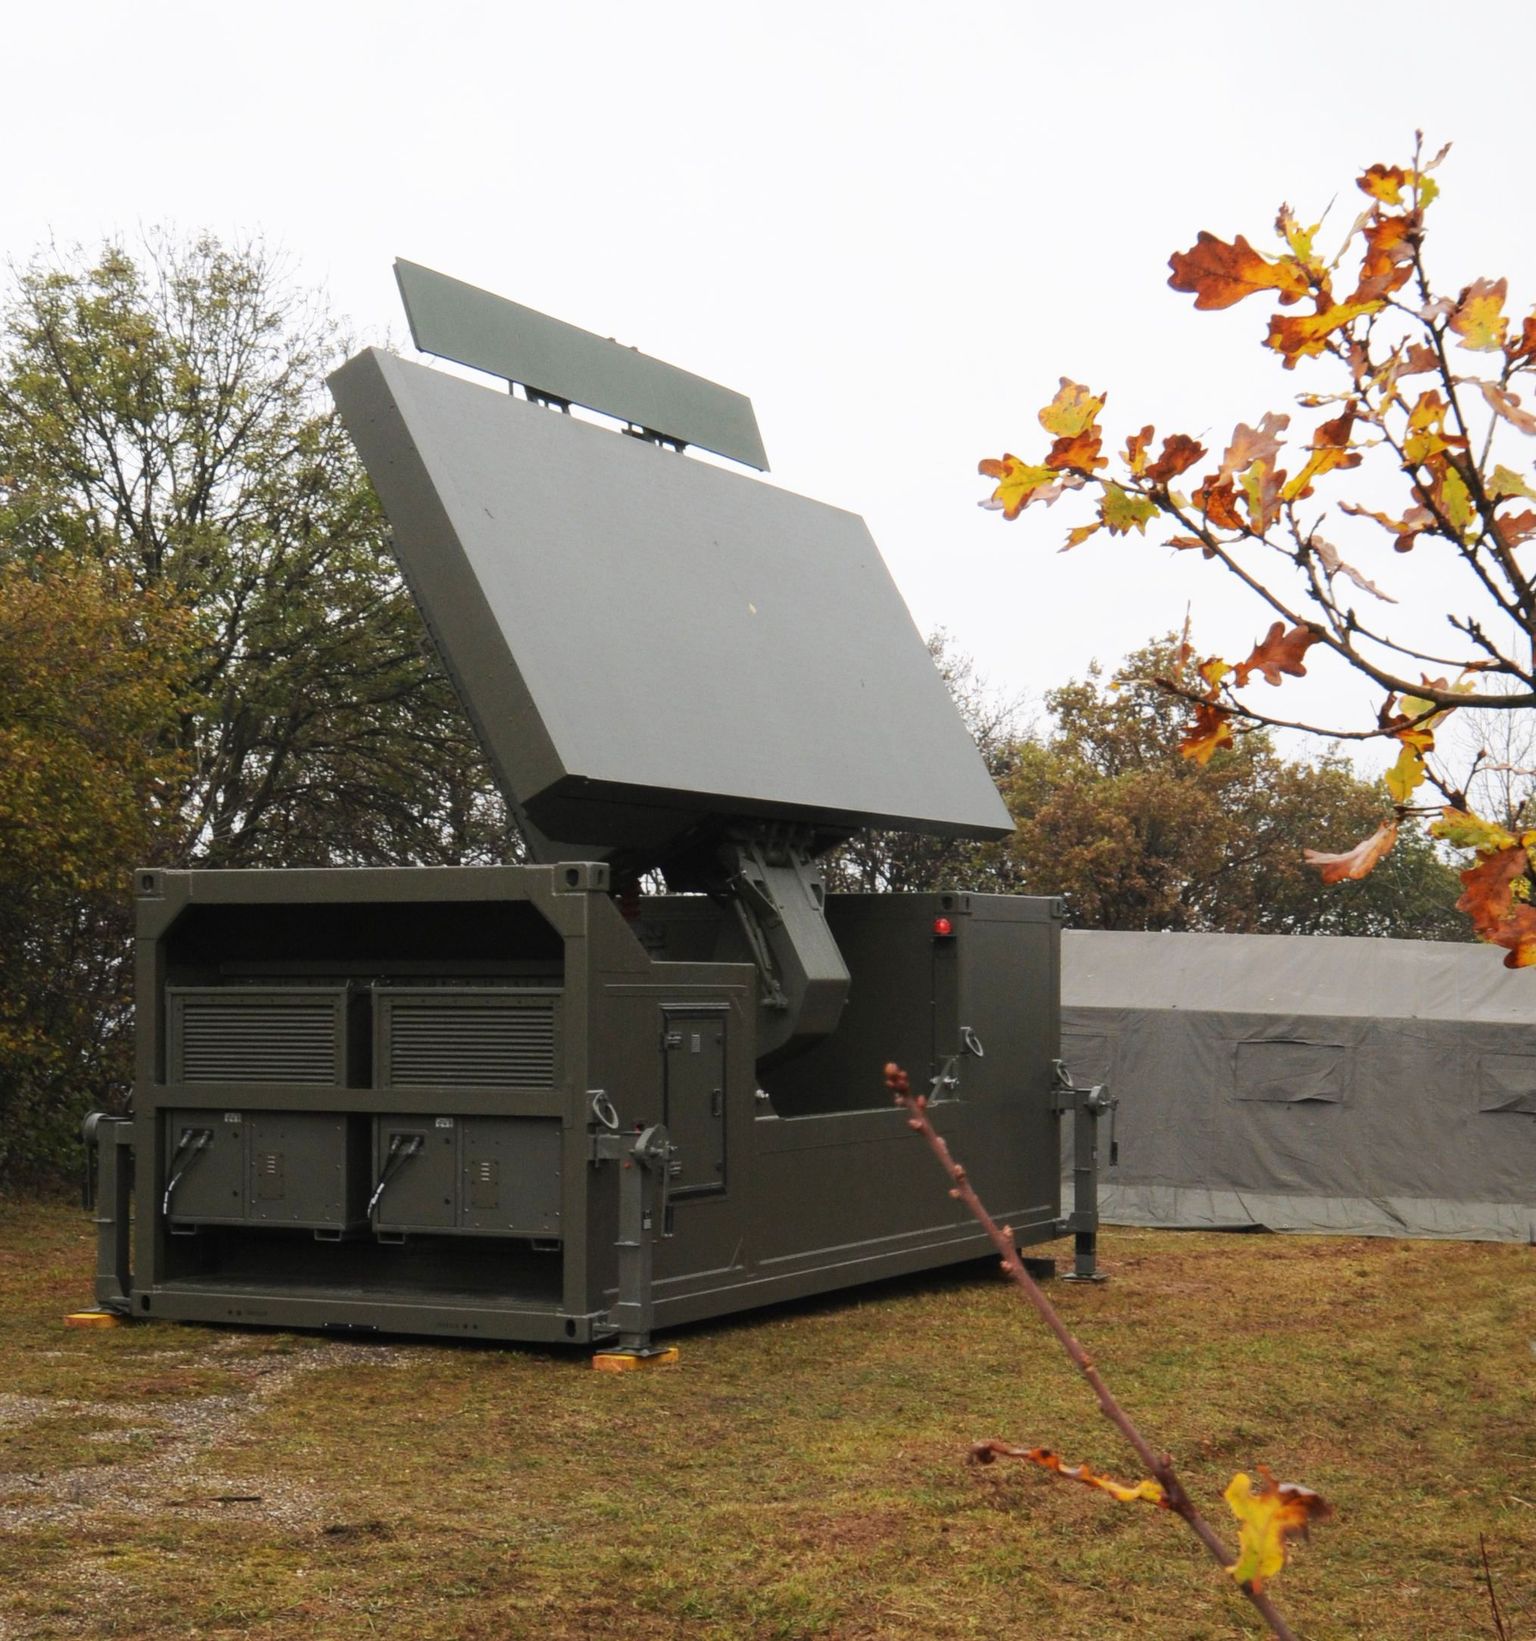 Selline näeb välja uus ja võimas Ground Master 400 radar. Foto on tehtud Prantsusmaal radarite valmistaja ThalesRaytheoni territooriumil.